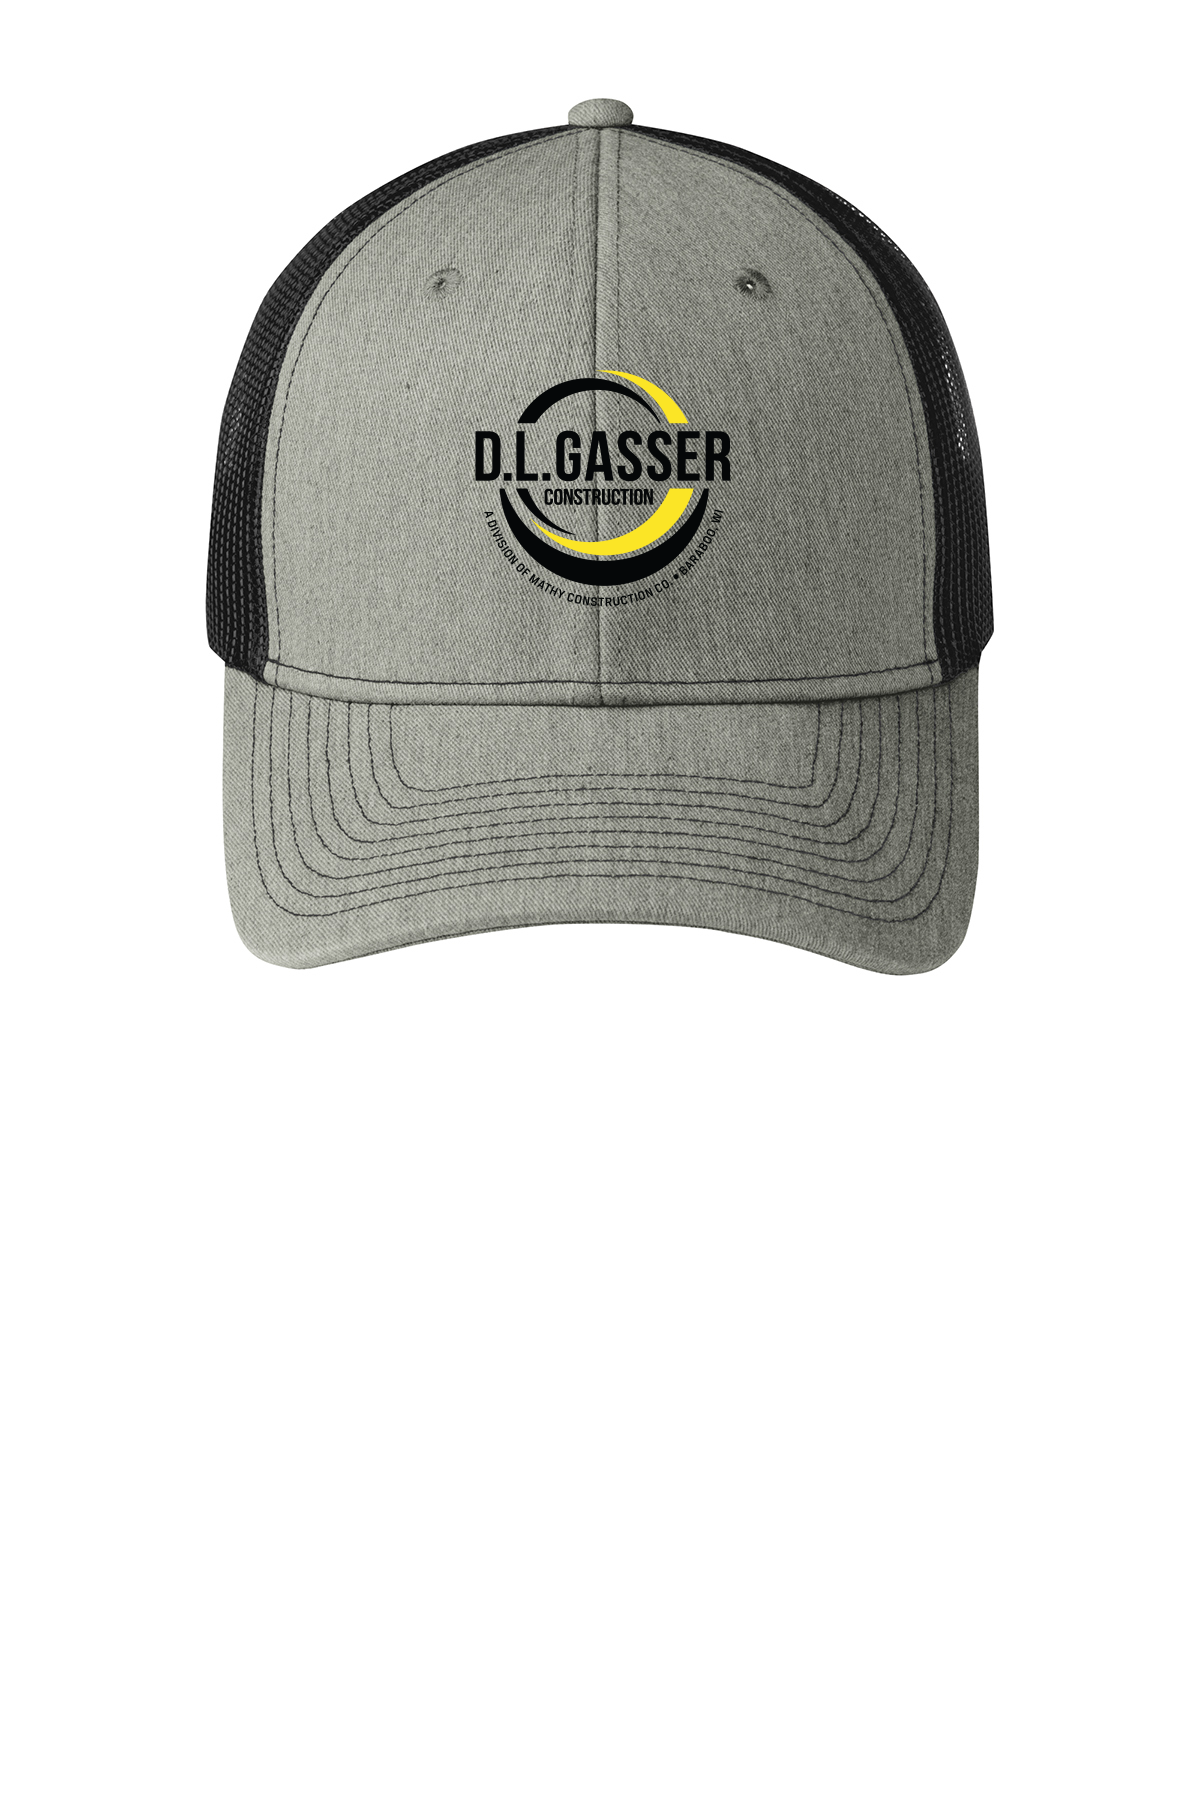 D.L. Gasser Construction Snapback Trucker Cap